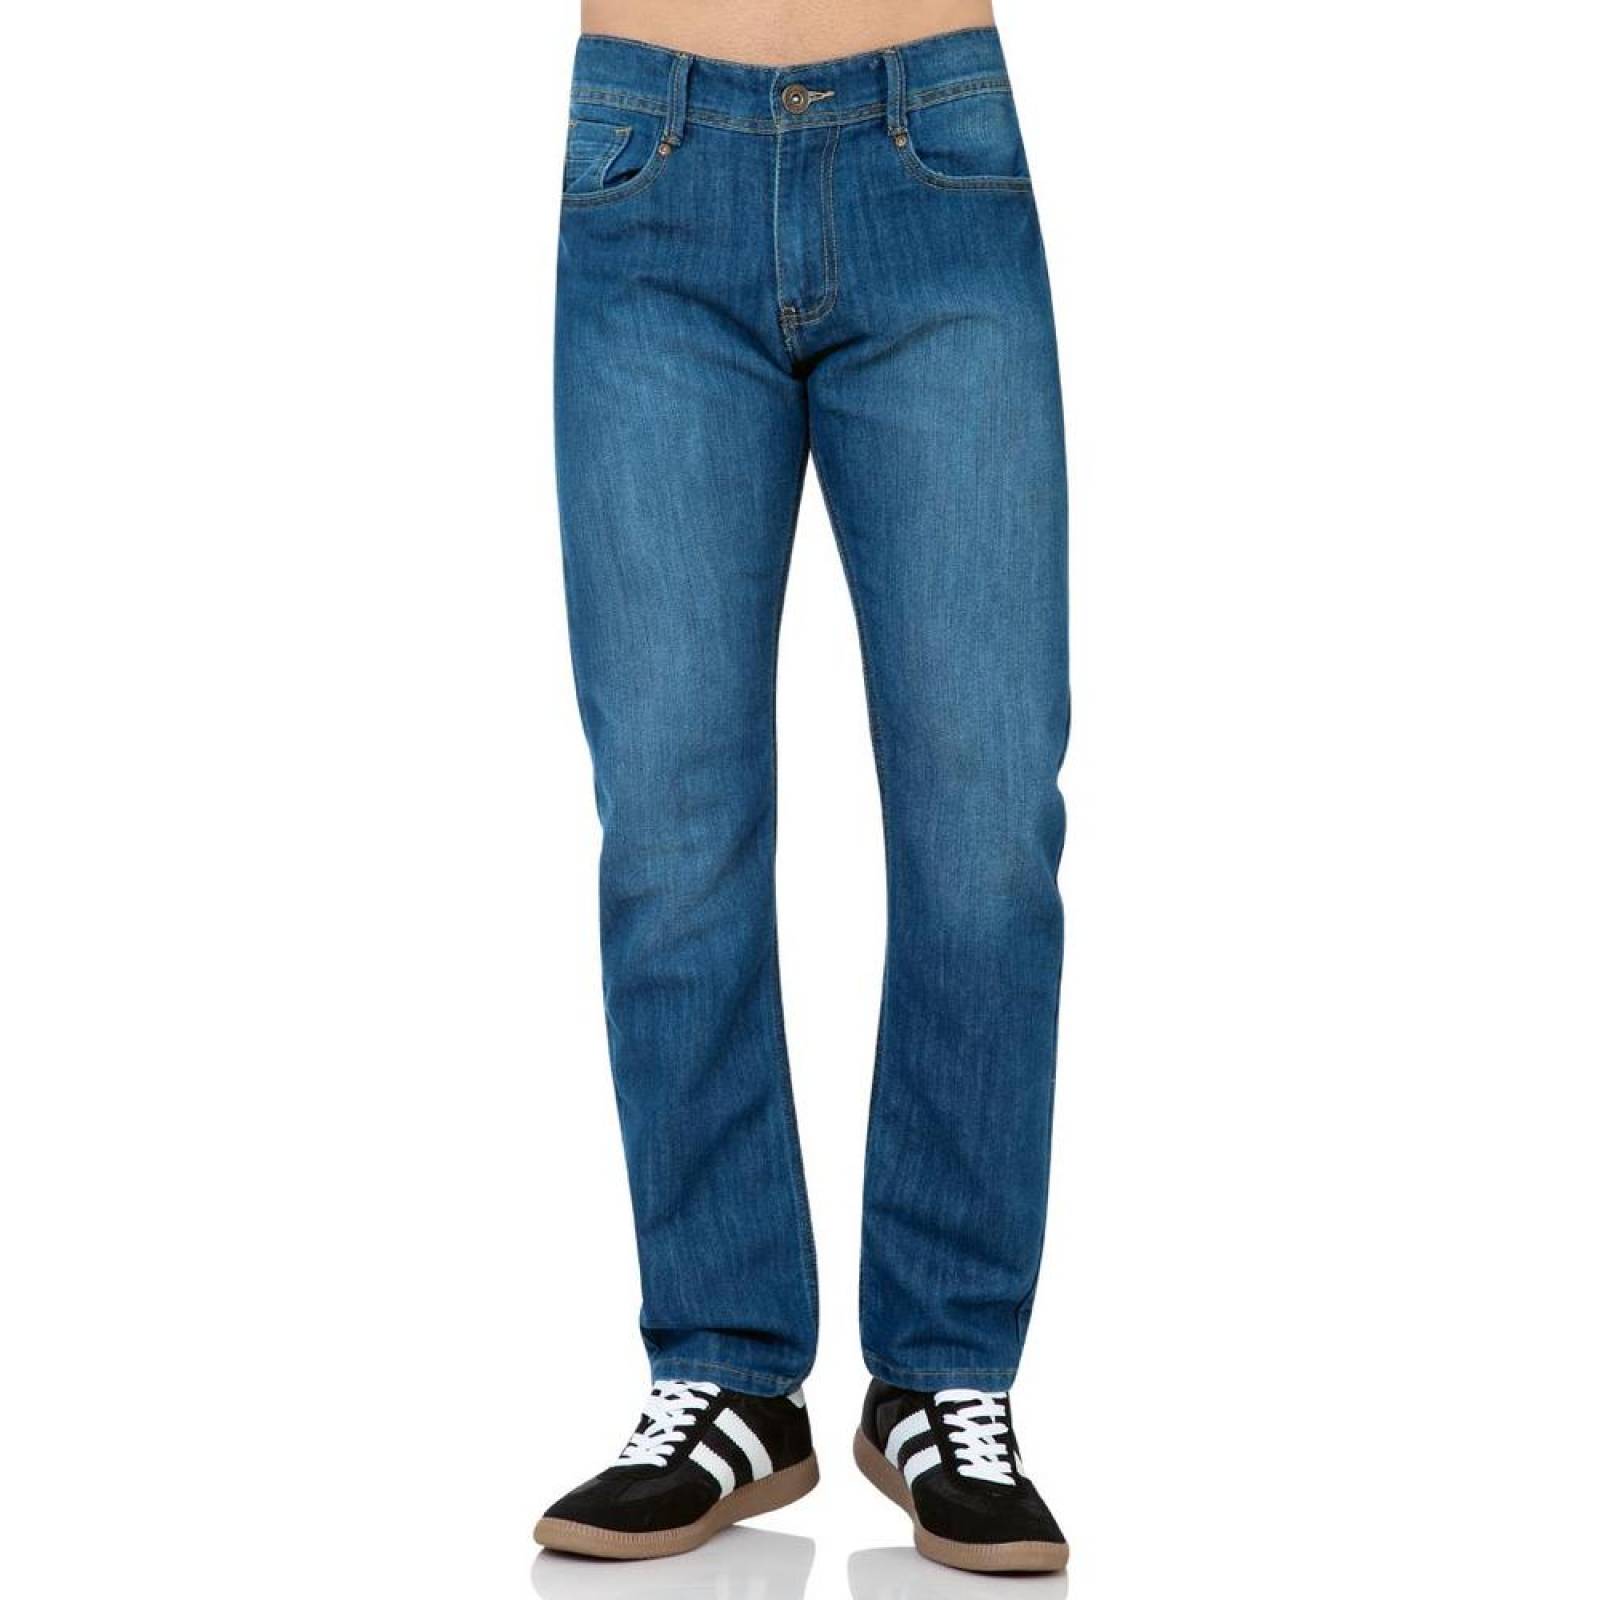 Jeans Básico Hombre Salvaje Tentación Doble 63103300 Mezclilla 